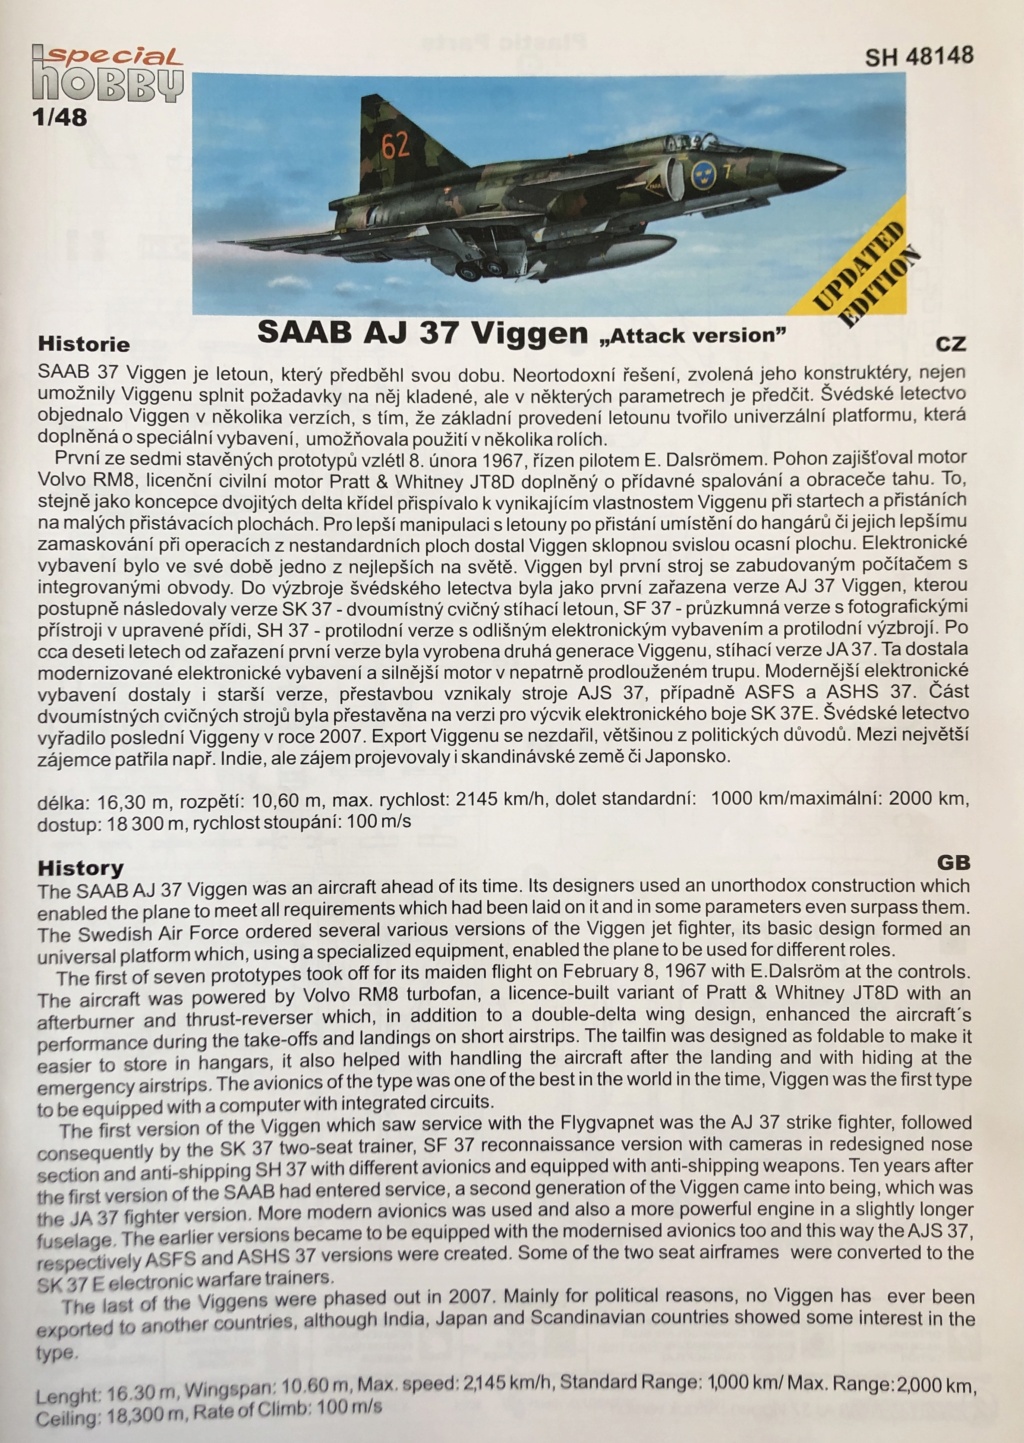 (GB Saabophile) Saab AJ 37 Viggen Special Hobby 1/48 - Fin de la Patine - 25/08/2021 Img_3349